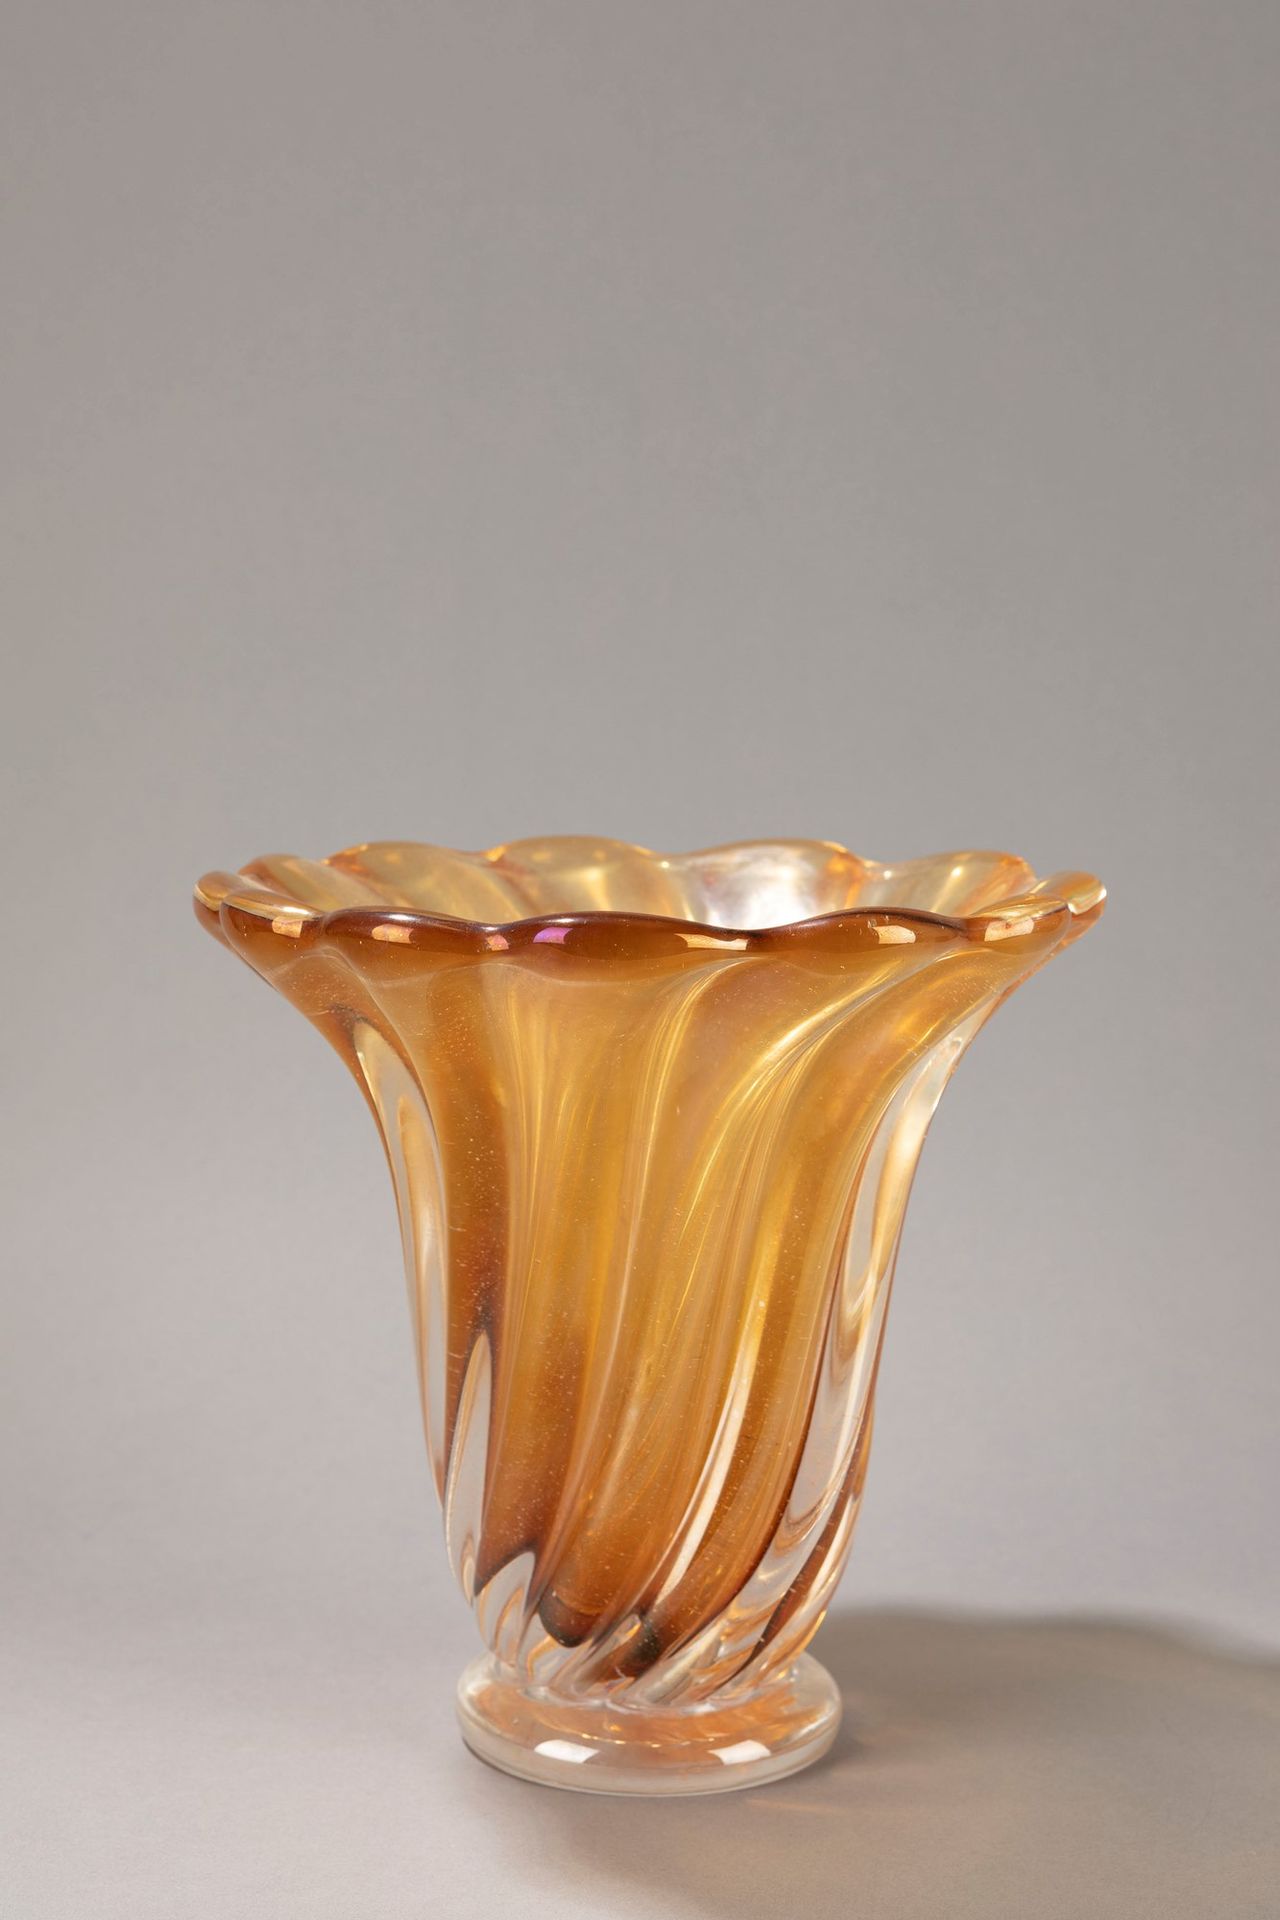 SEGUSO Vase, 1950 ca.

H 24 x 22 cm 
sommerso Glas, bernsteinfarben schillernd.